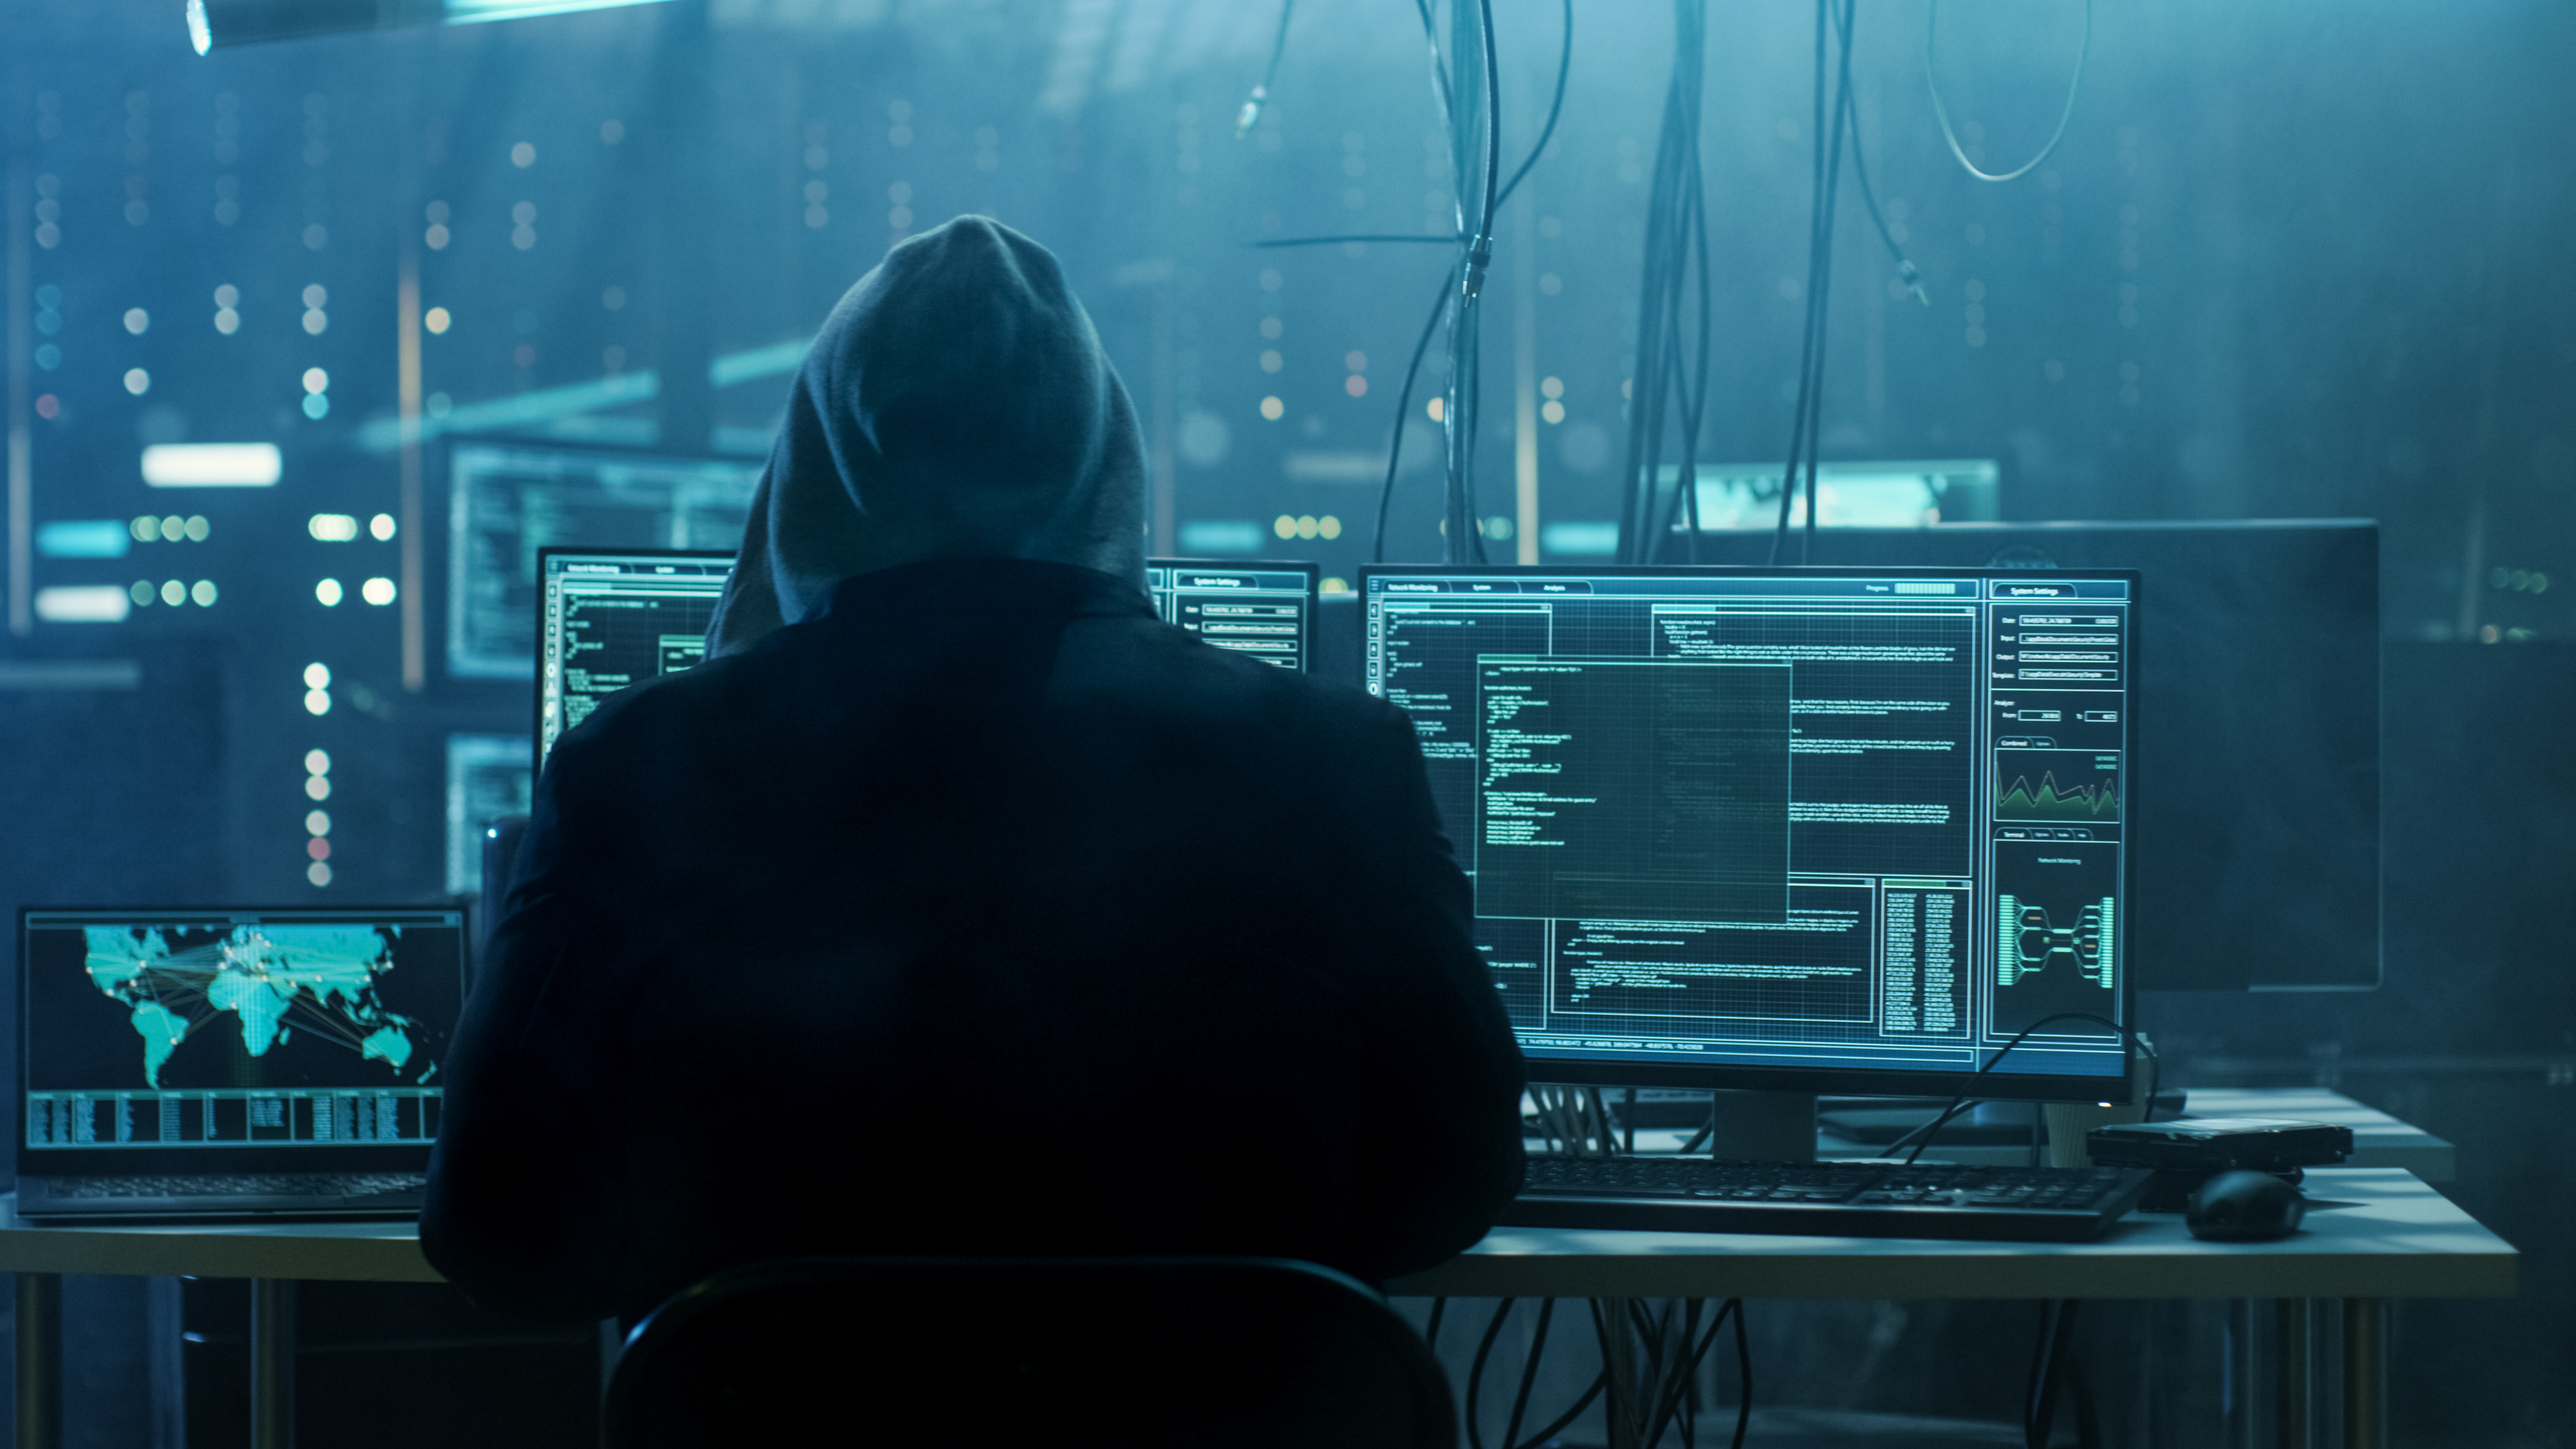 Peligroso hacker encapuchado irrumpe en servidores de datos. | Fuente: Shutterstock